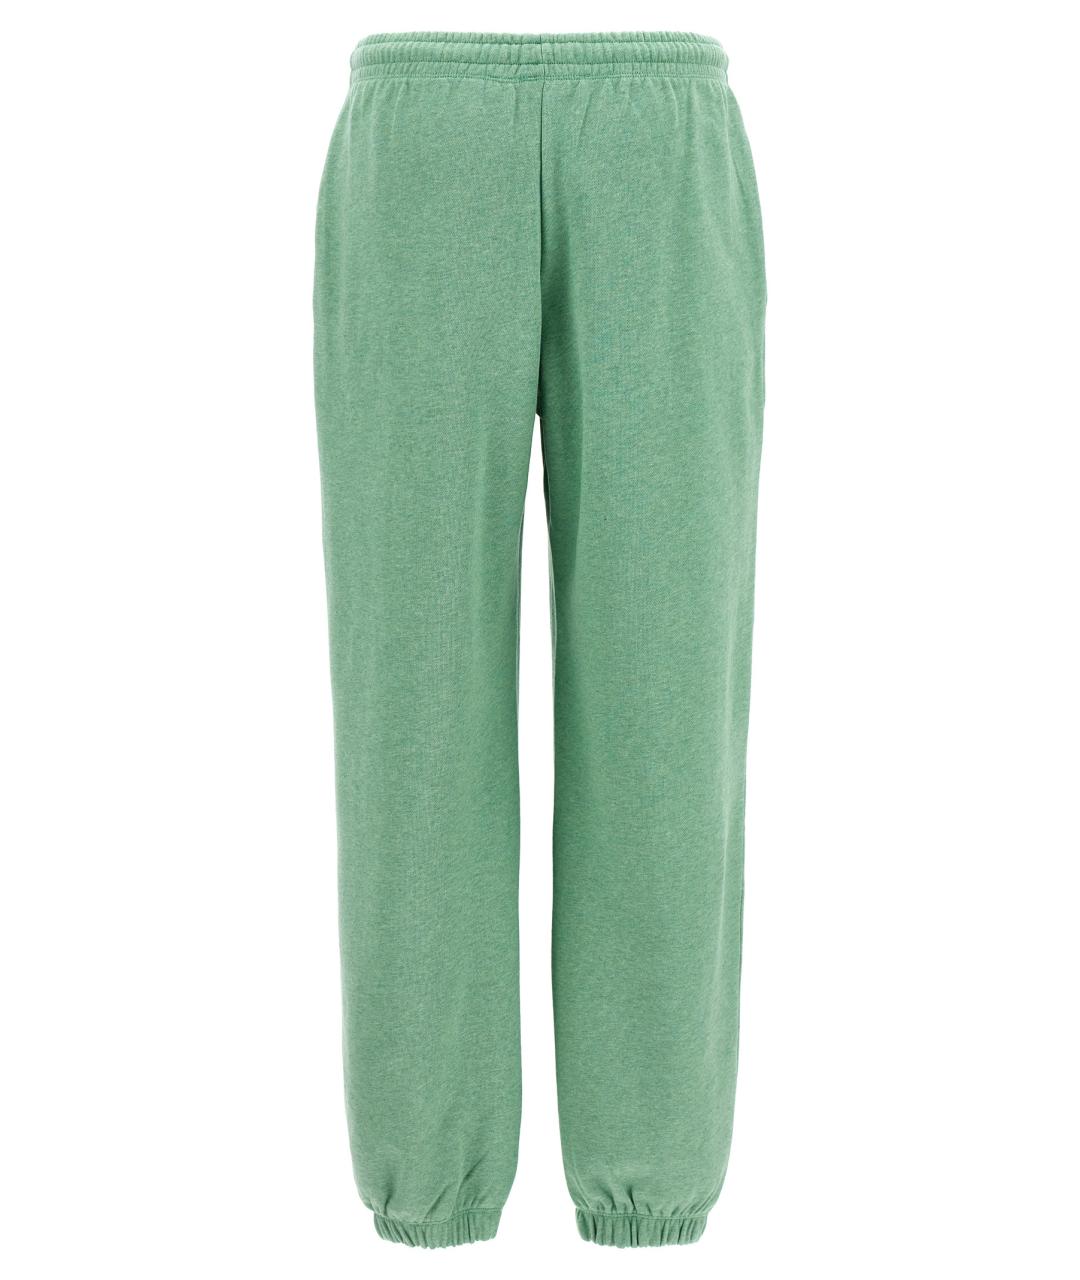 ROTATE Зеленые хлопковые спортивные брюки и шорты, фото 2